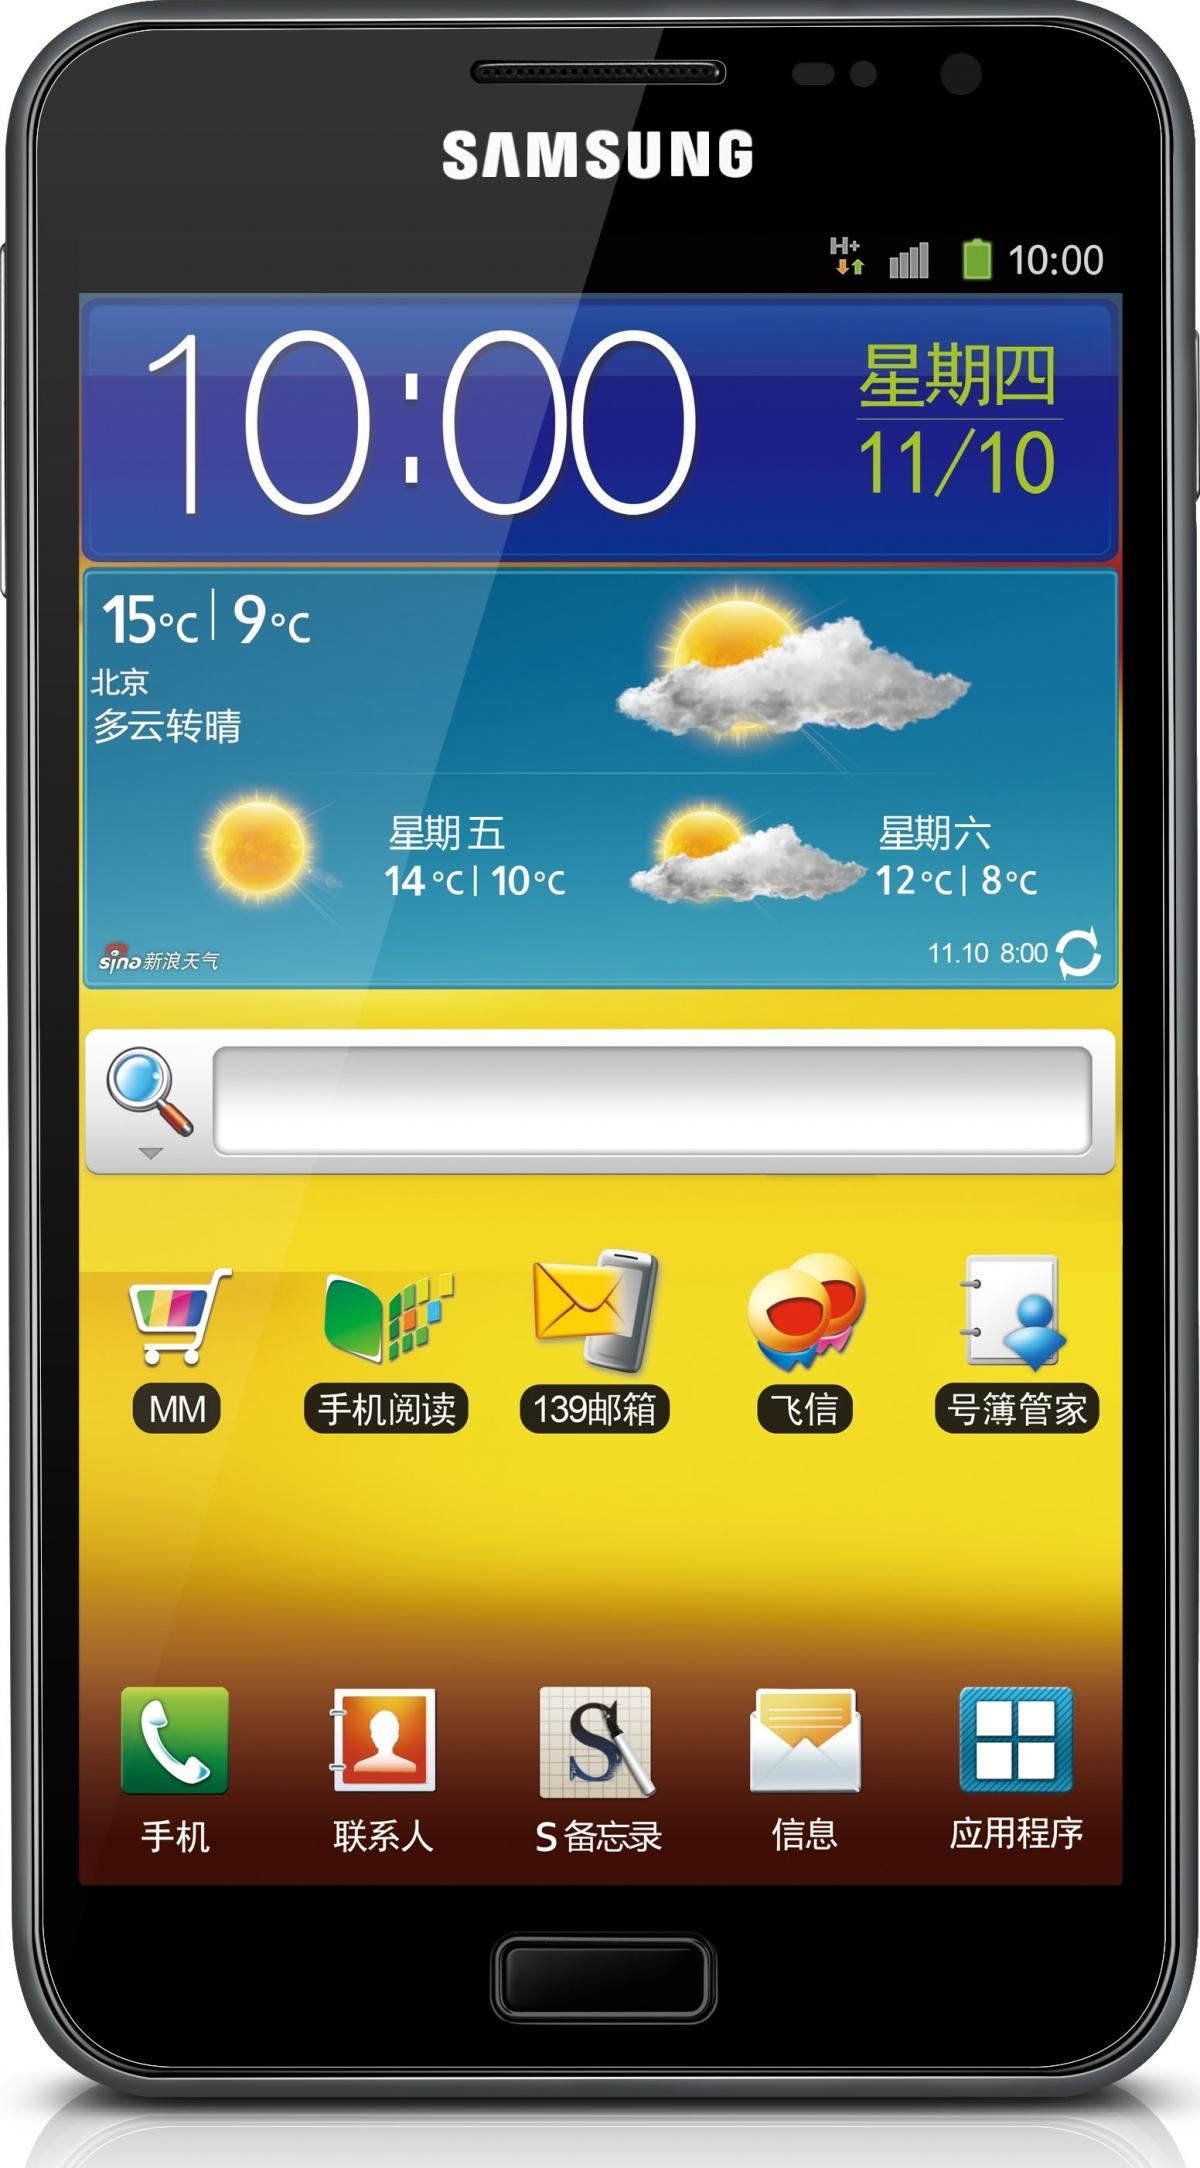 Galaxy Note (China â€“ TD SCDMA) GT-I9228